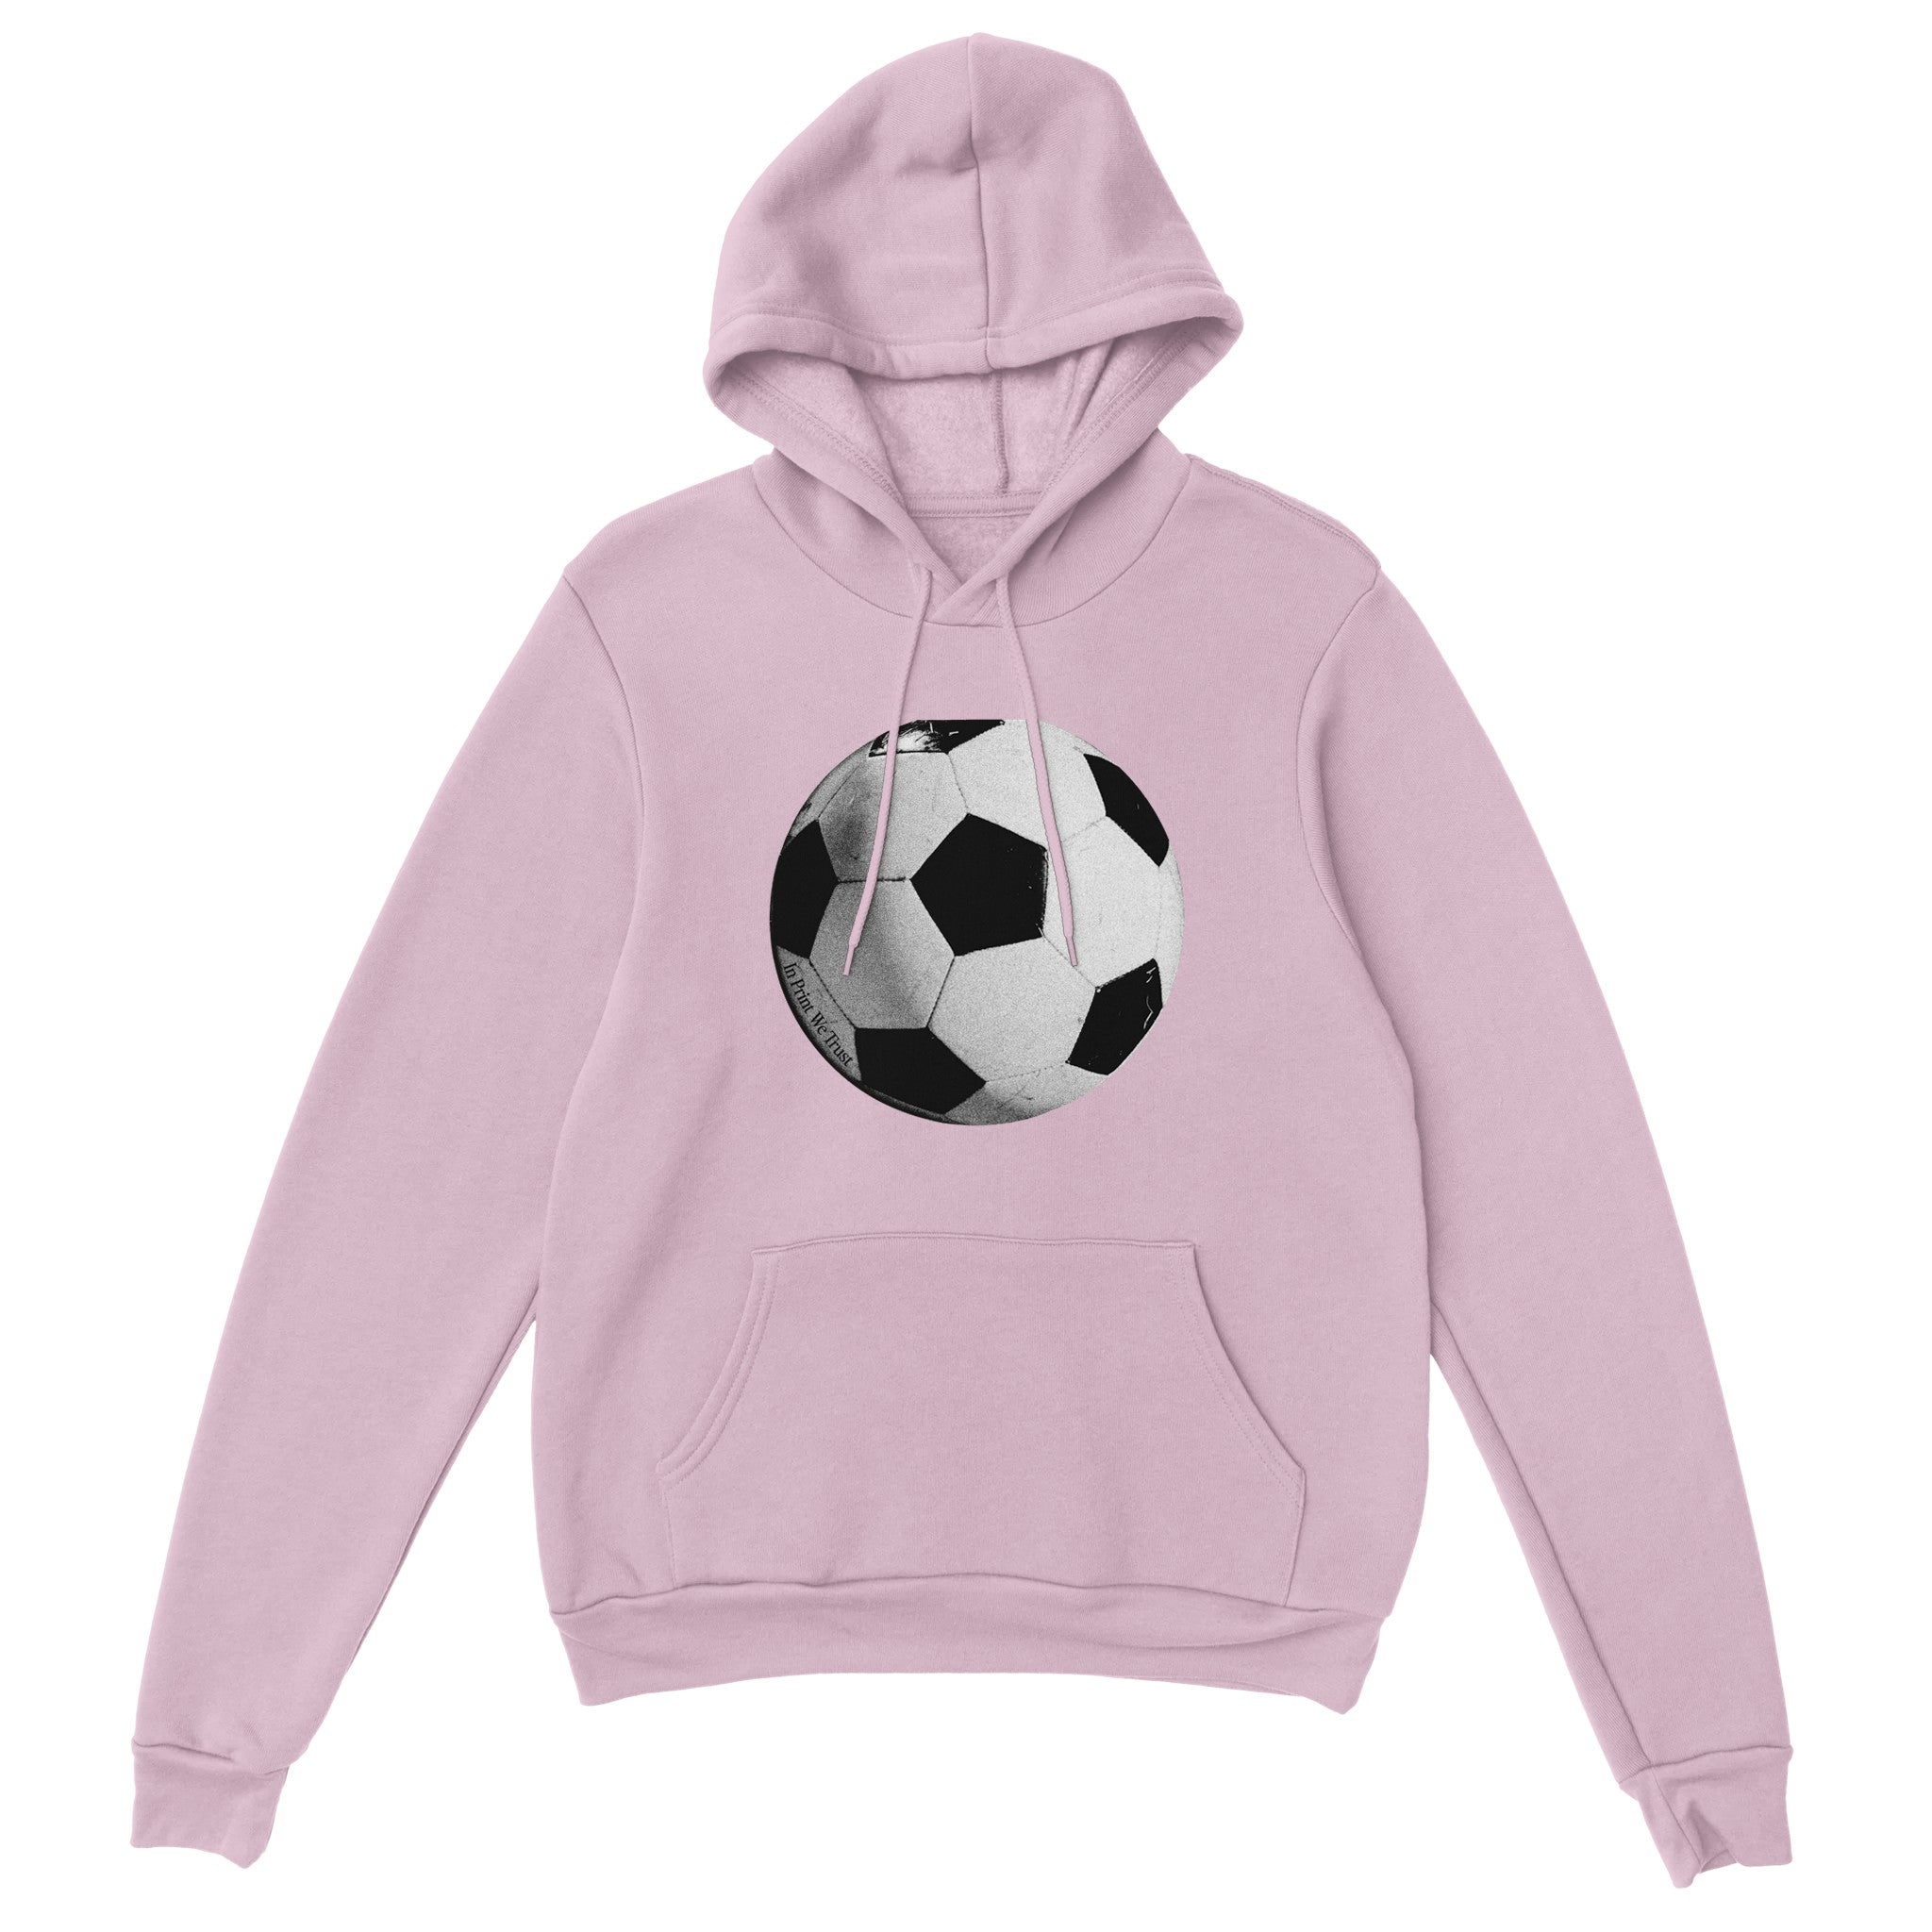 'Football' hoodie - In Print We Trust